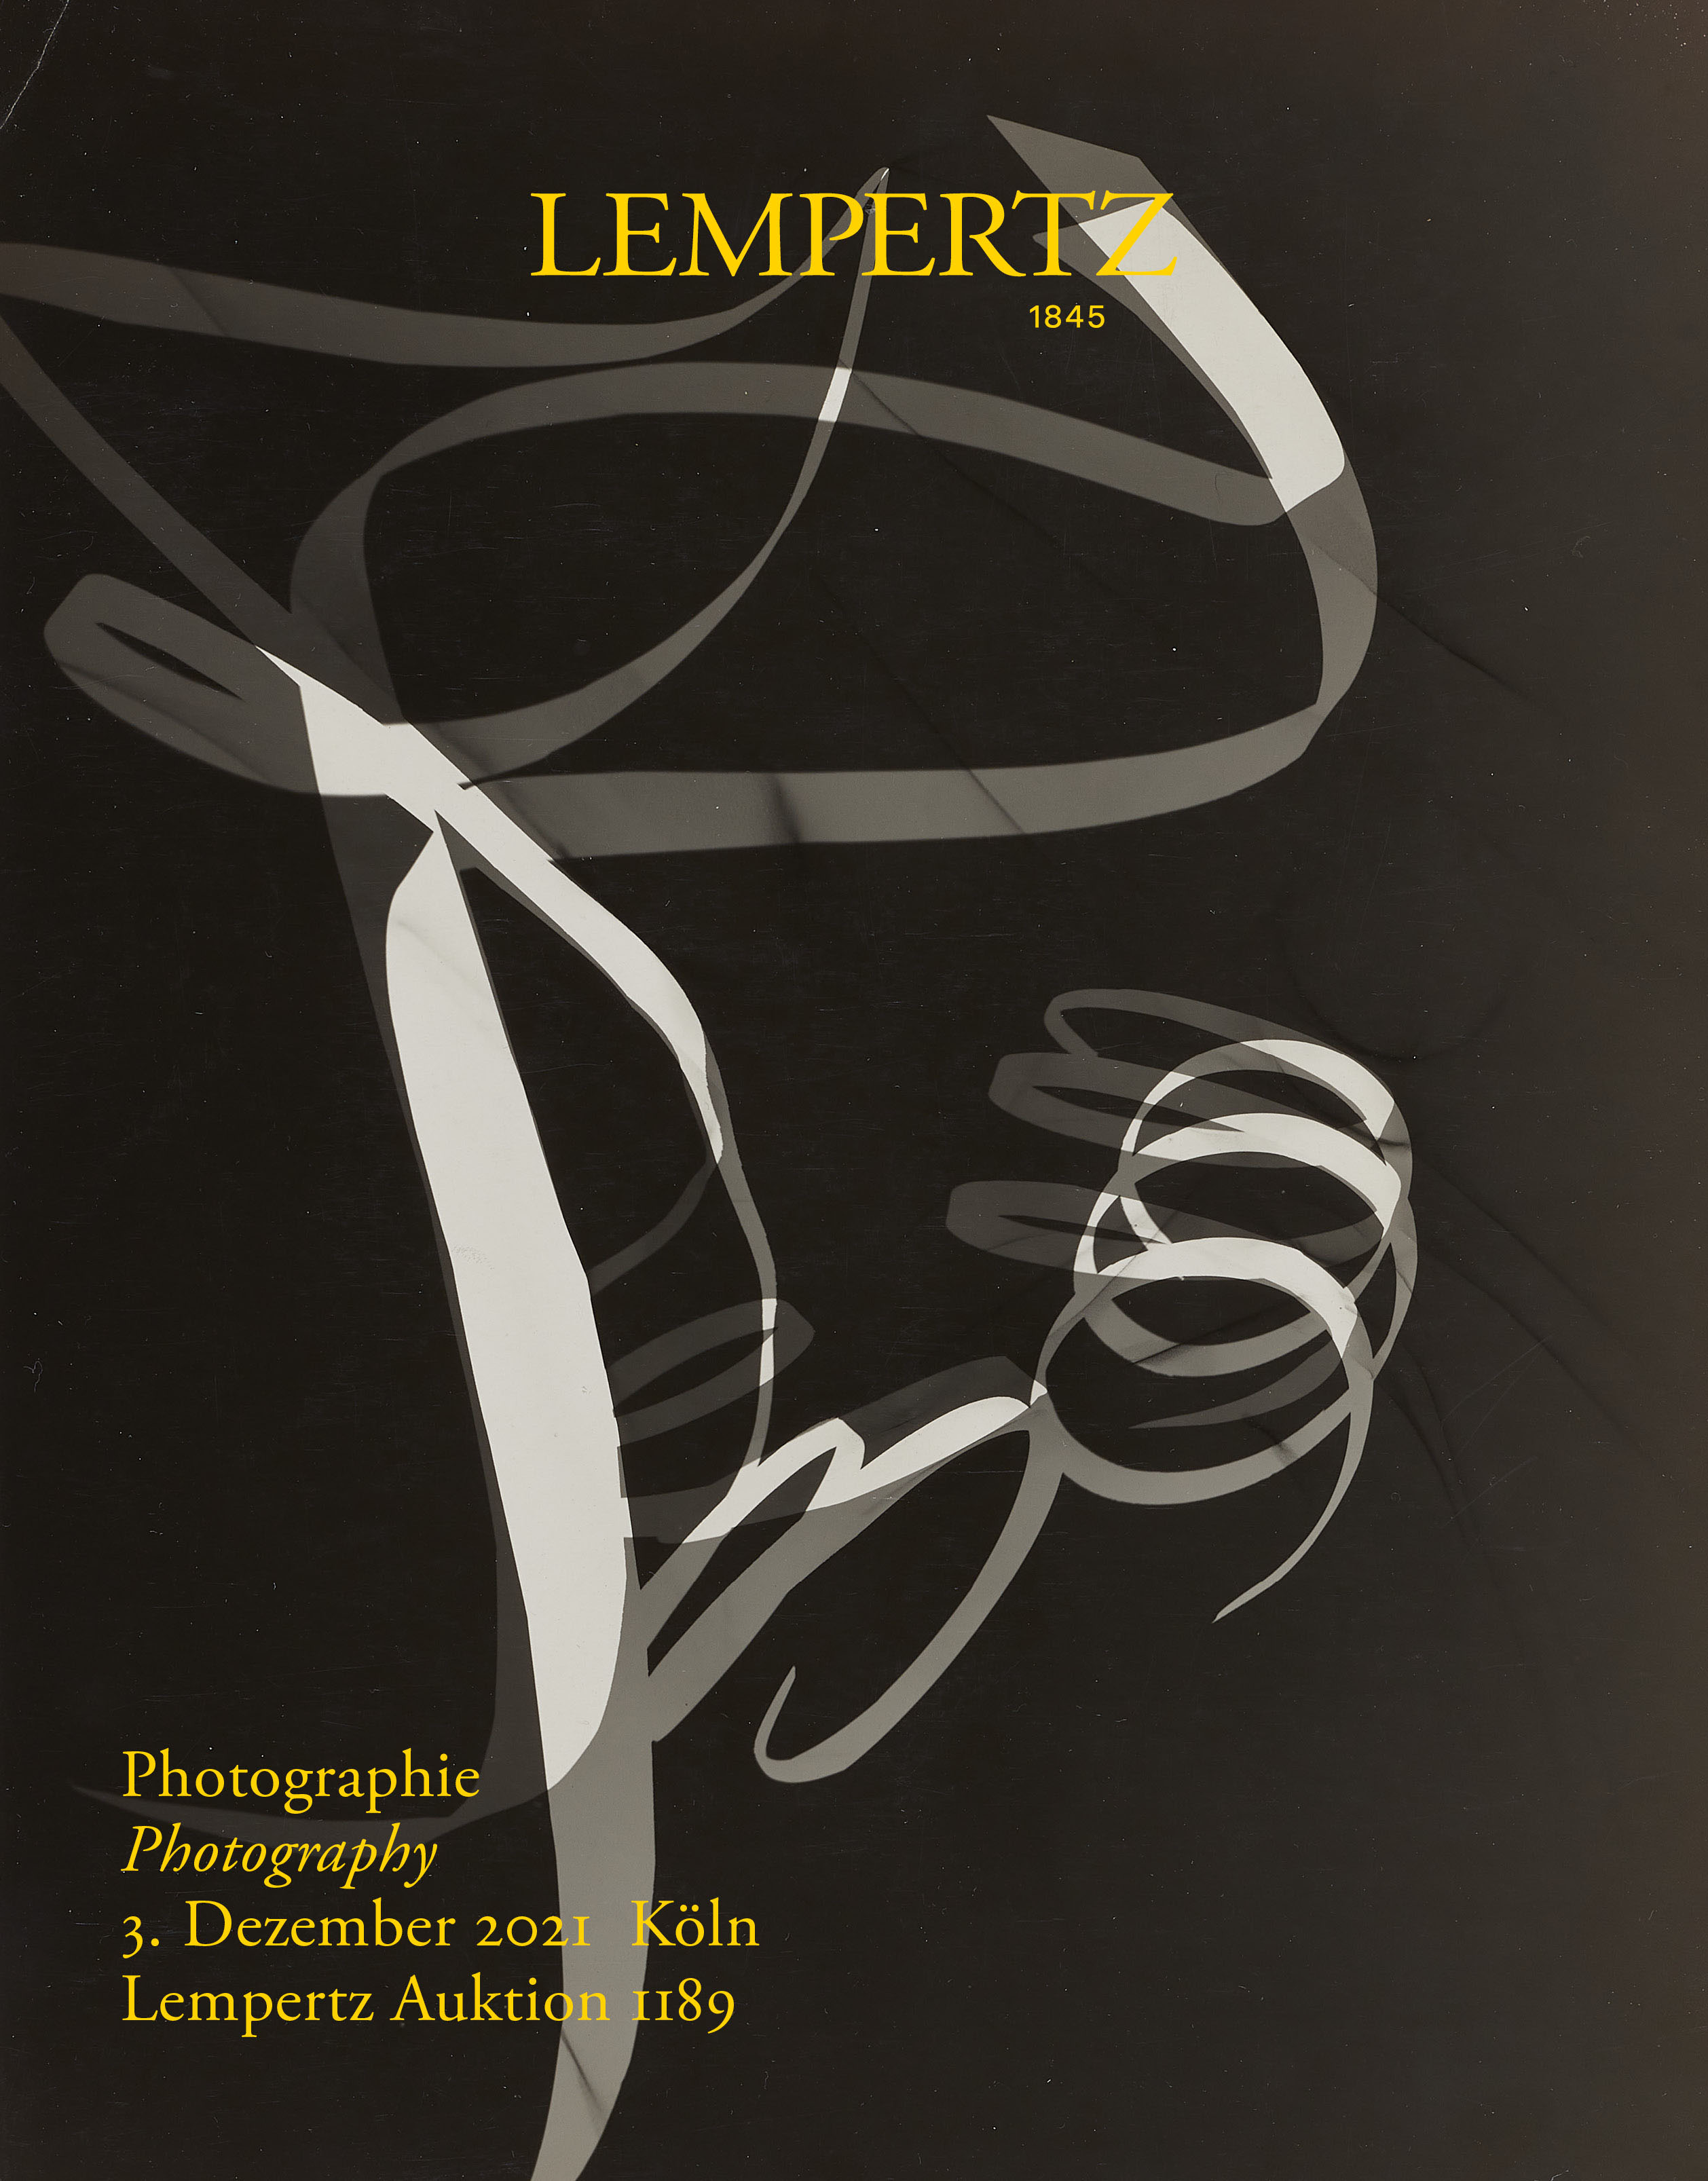 Auktionskatalog - Photographie - Online Katalog - Auktion 1189 – Ersteigern Sie hochwertige Kunst in der nächsten Lempertz-Auktion!